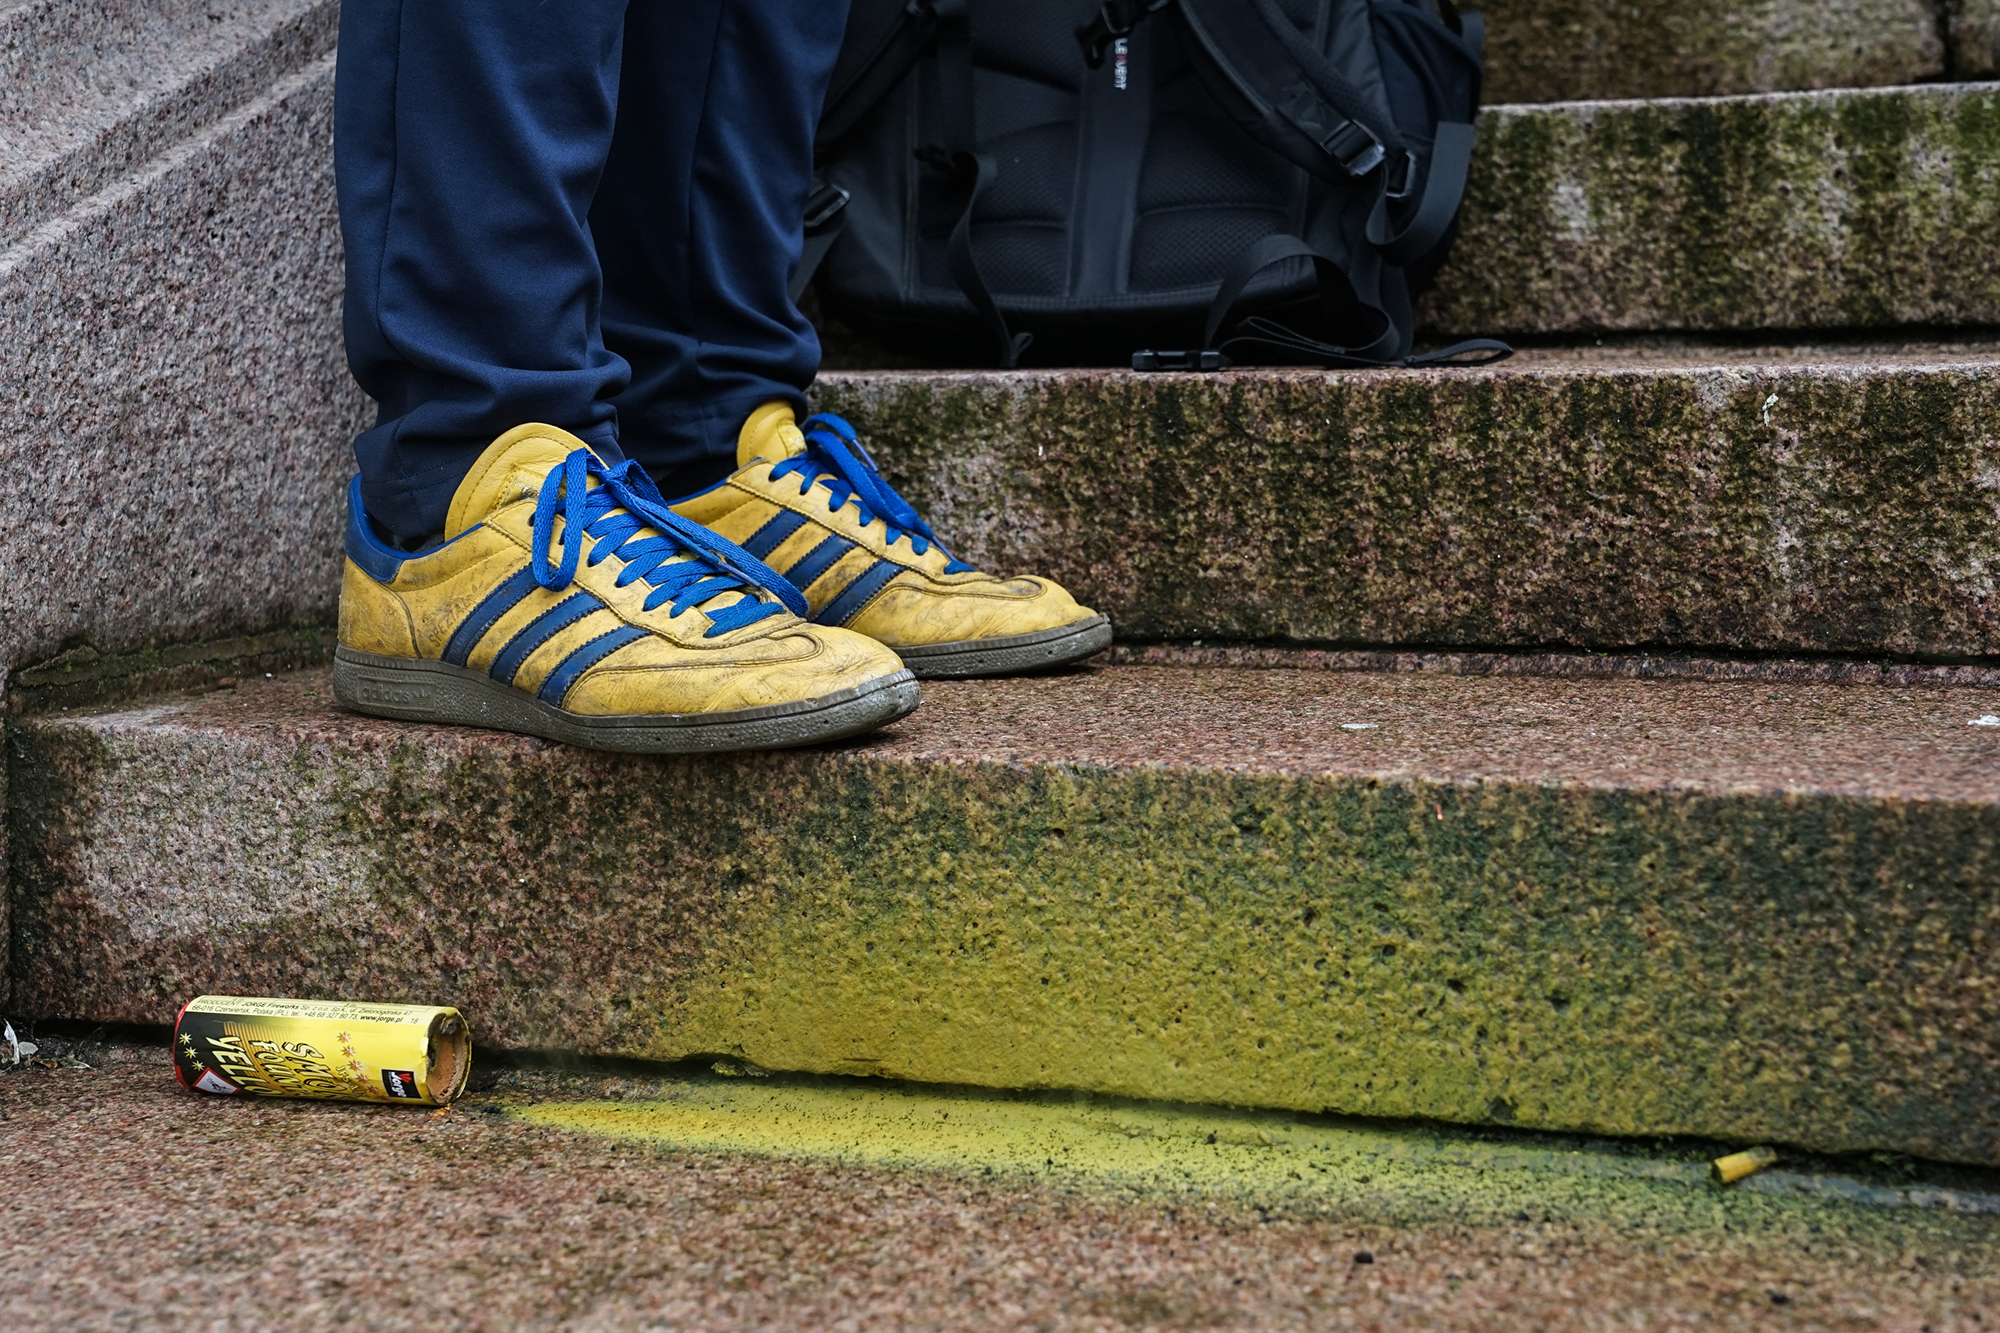 Schuhe eines Union-Fans nach dem letzten "Zwanze"-Derby (Bild: Juliette Bruynseels/Belga)